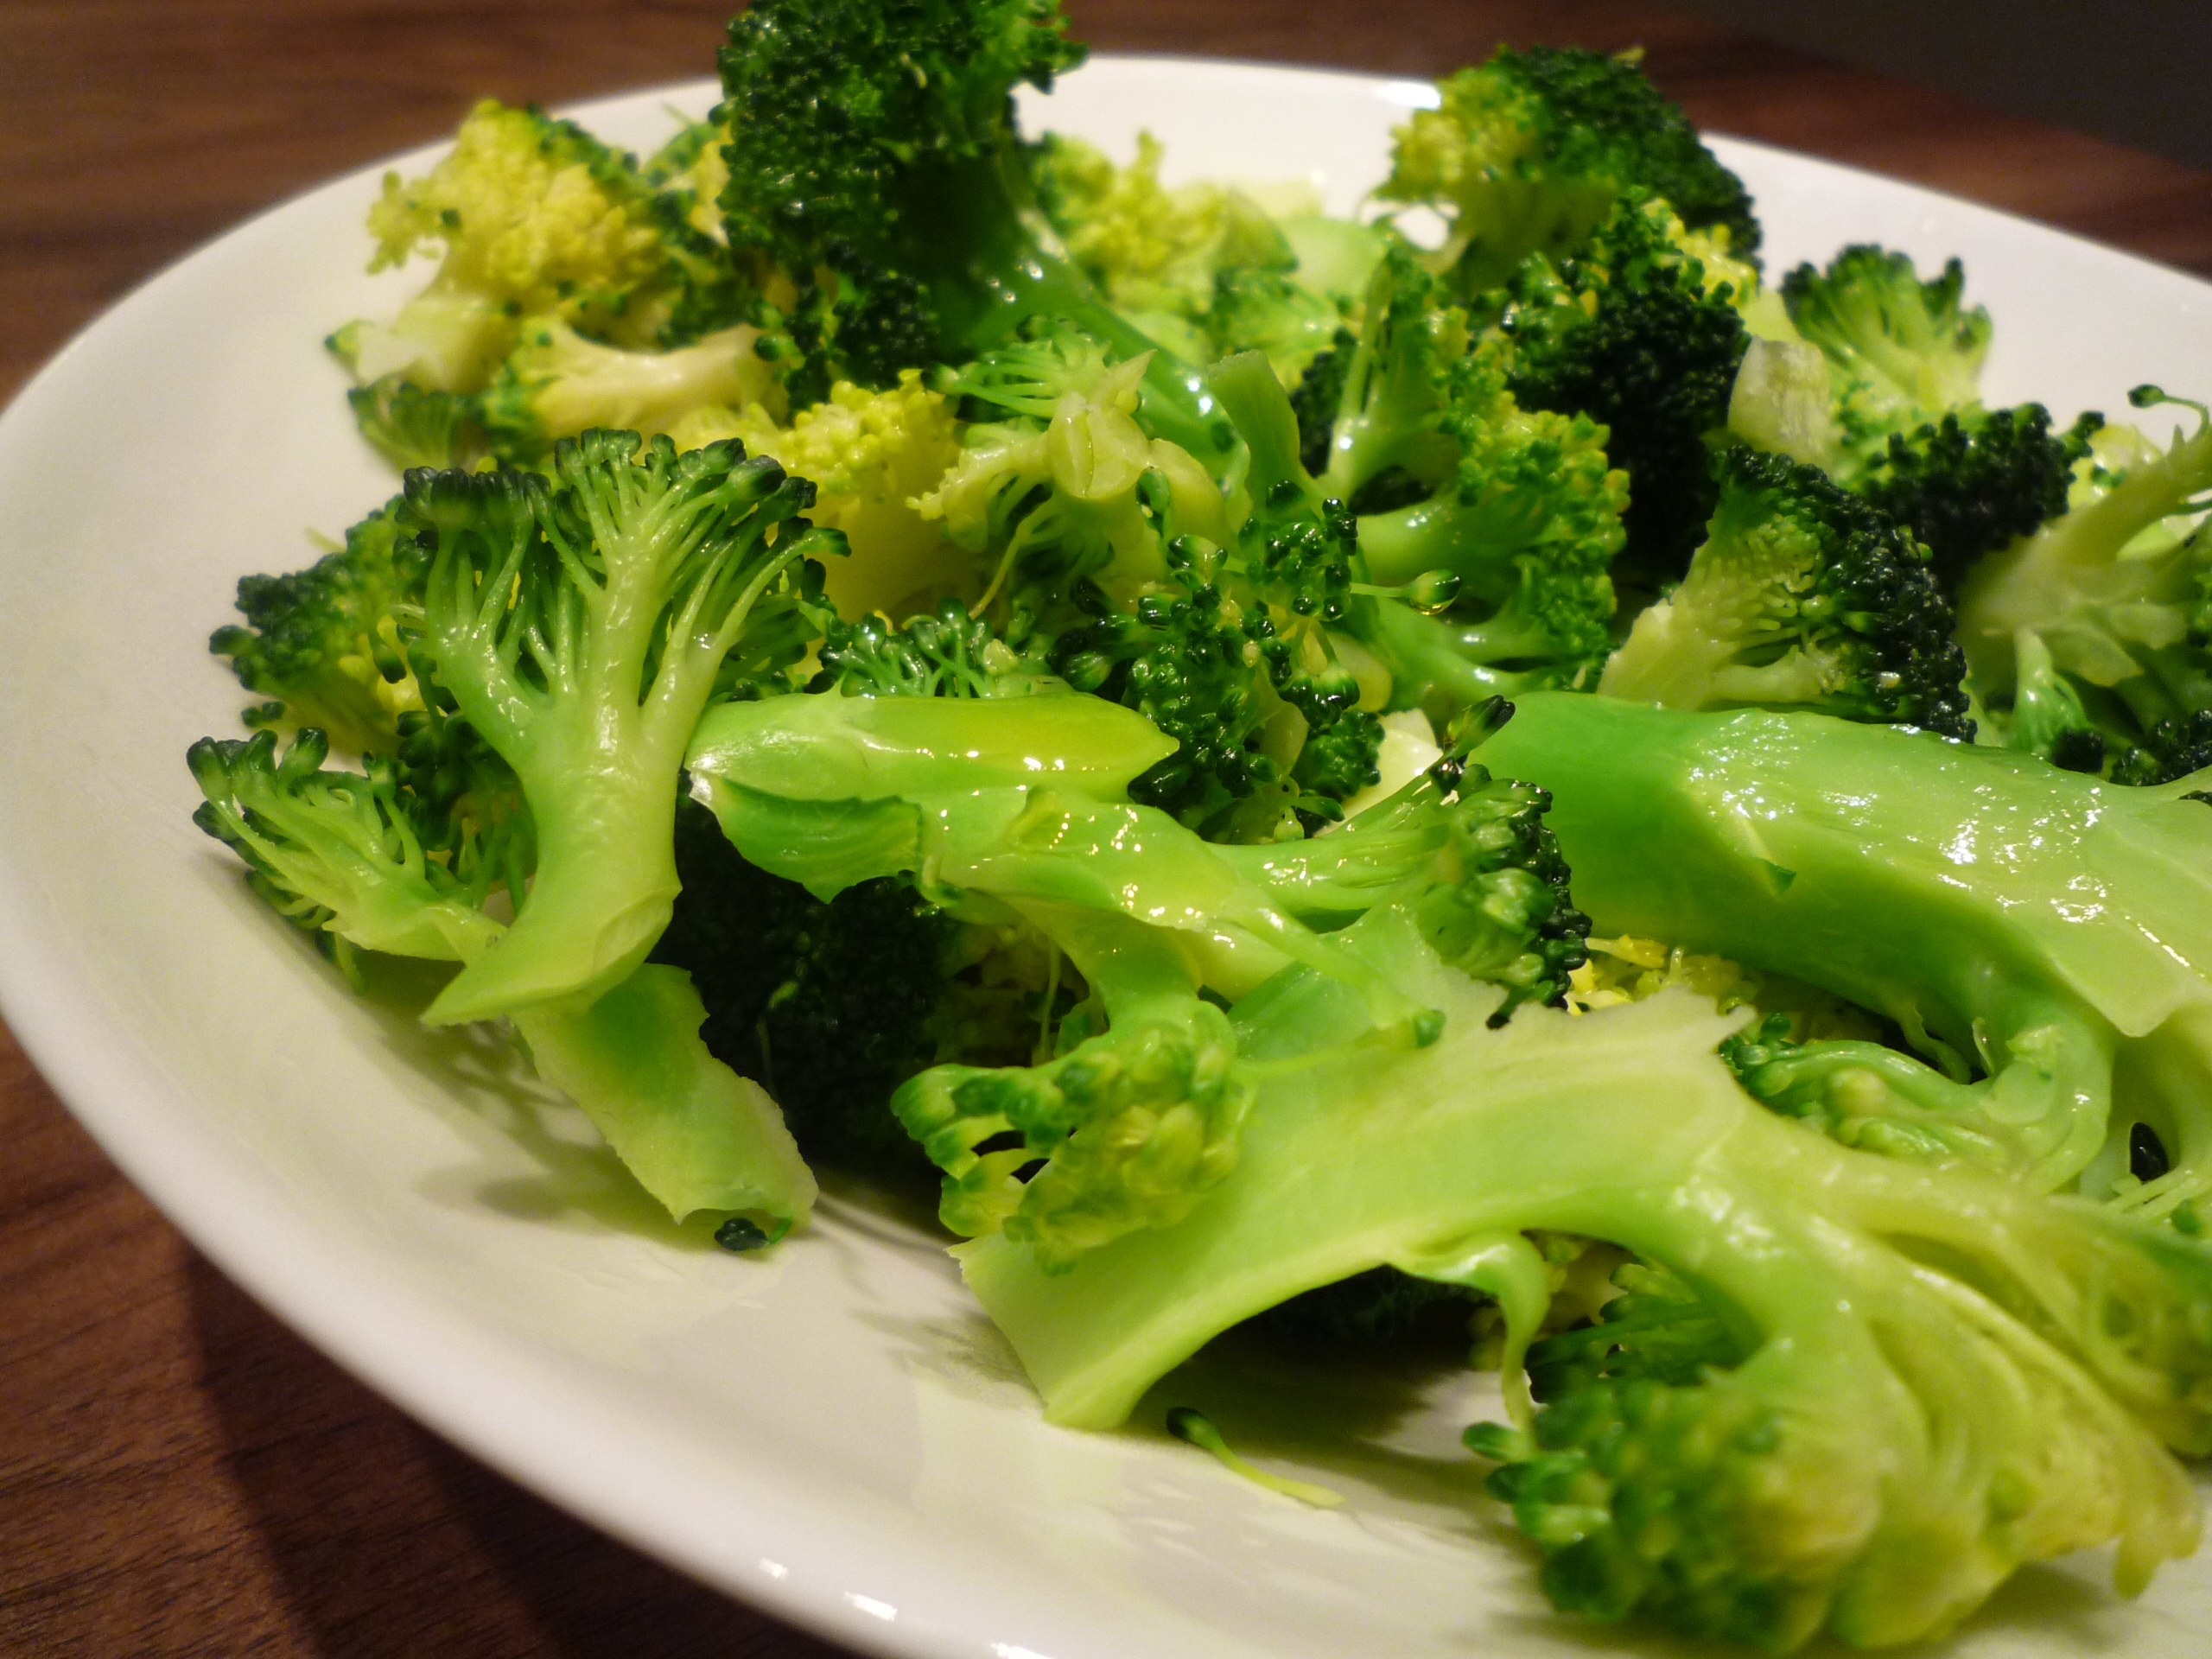 JVS image - Steamed broccoli